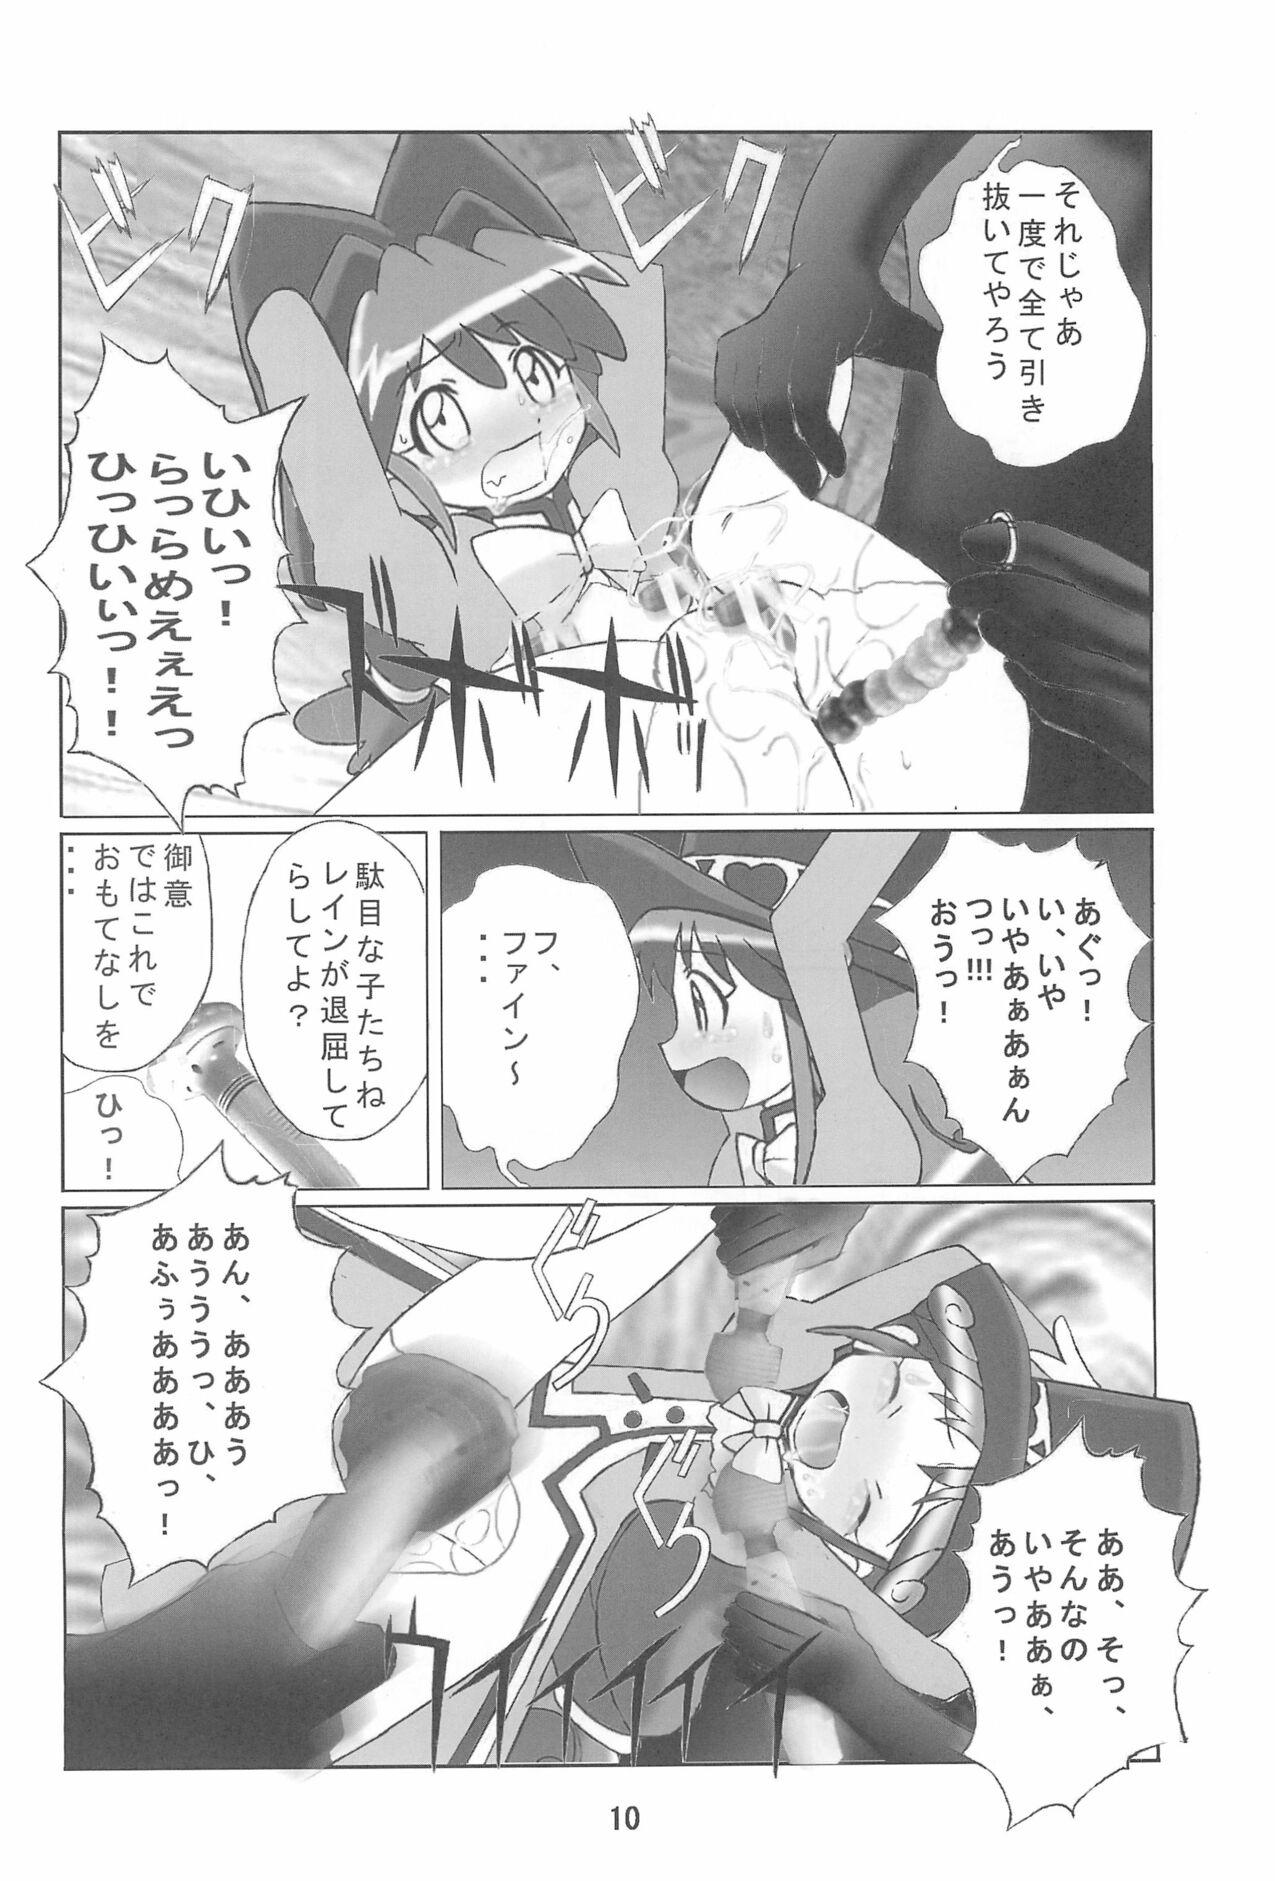 Fucking Pussy Kuuronziyou 14 - Fushigiboshi no futagohime | twin princesses of the wonder planet Bound - Page 10